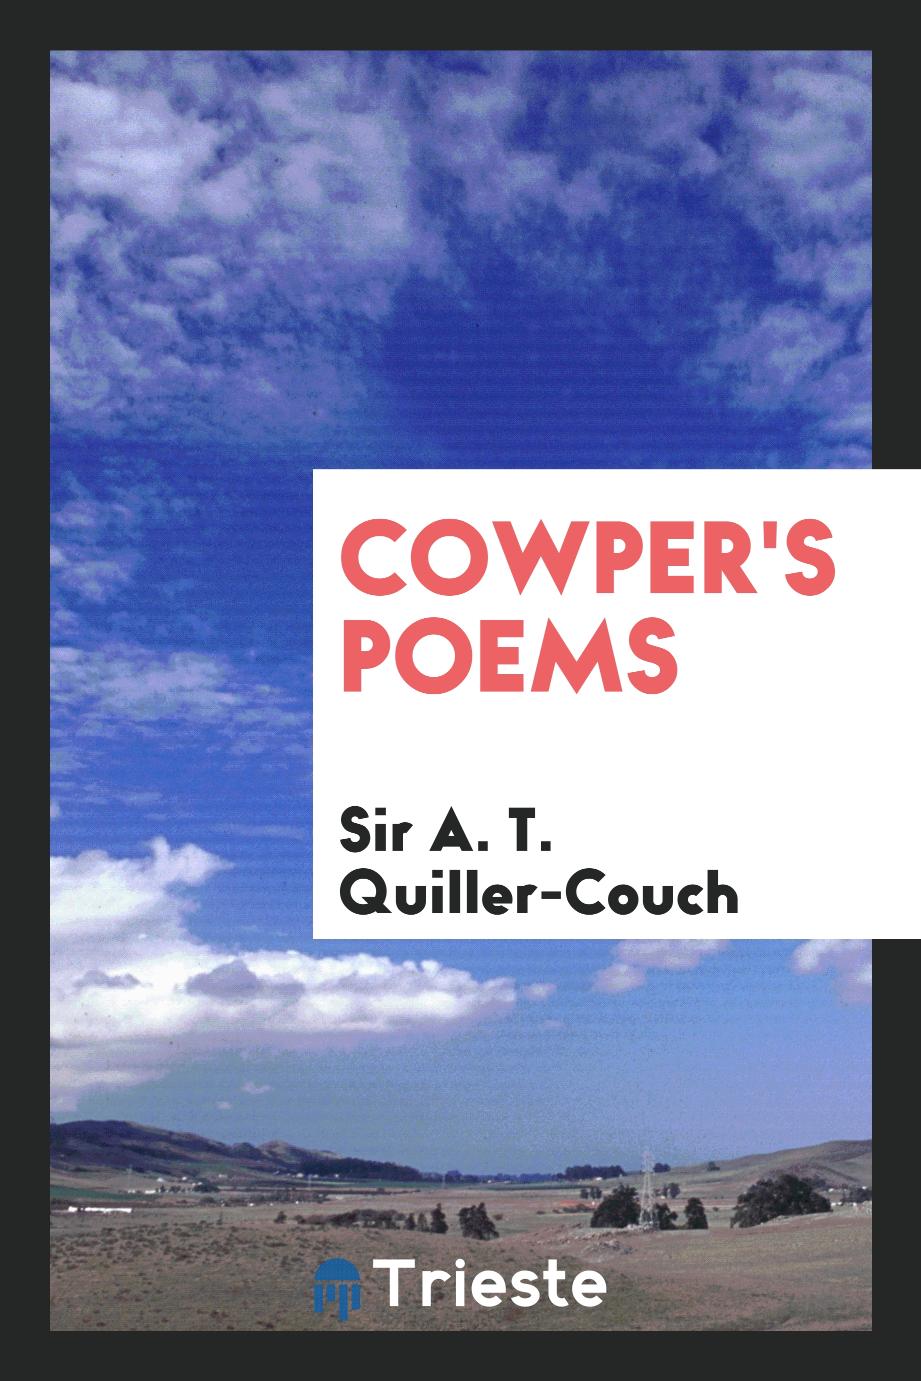 Cowper's poems